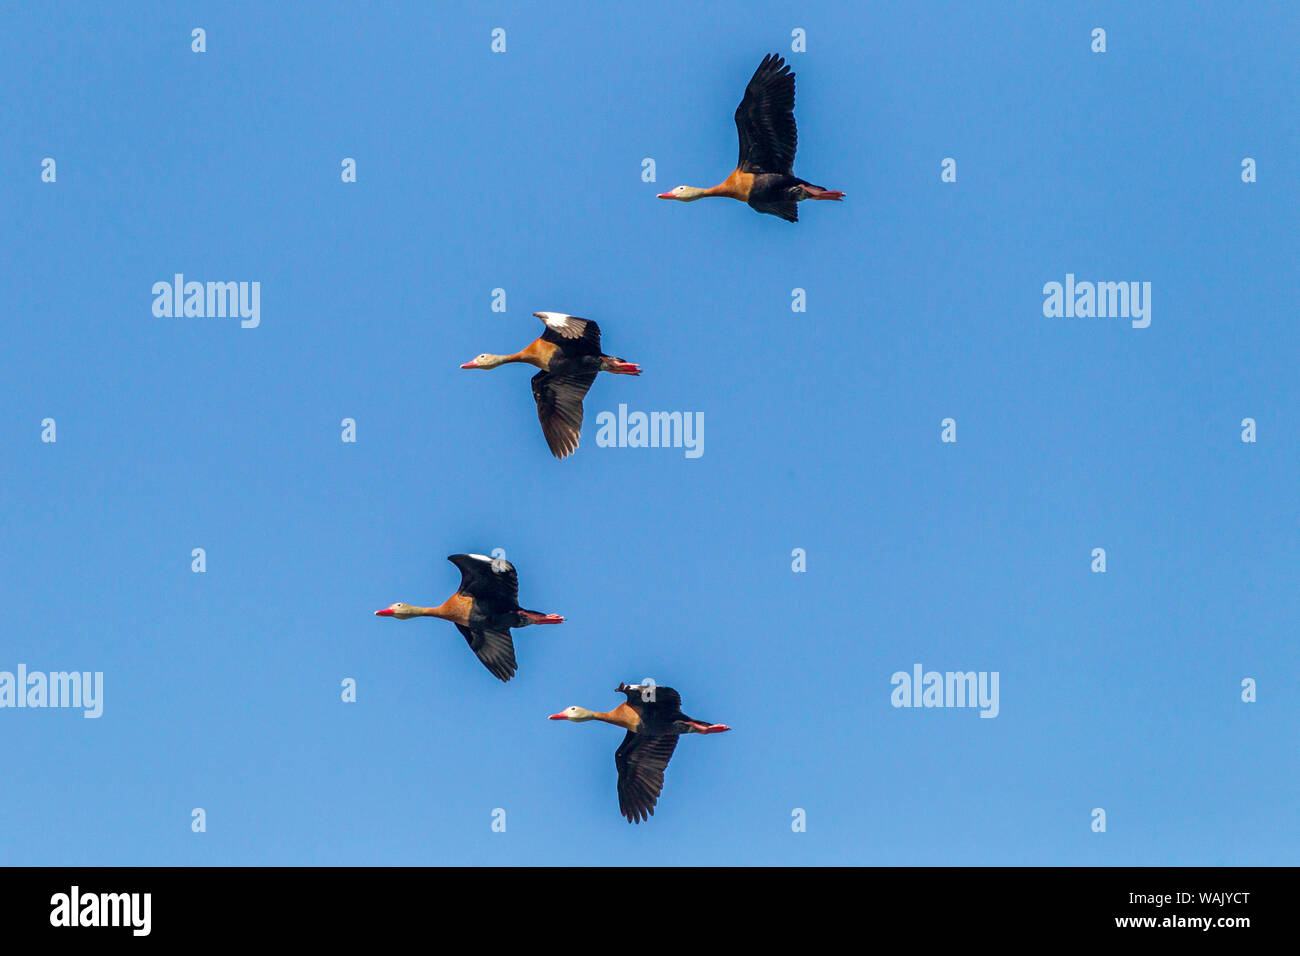 Estados Unidos, Louisiana, el lago Martin. Curva negro silbido patos en vuelo. Crédito: Cathy y Gordon Illg Jaynes / Galería / DanitaDelimont.com Foto de stock